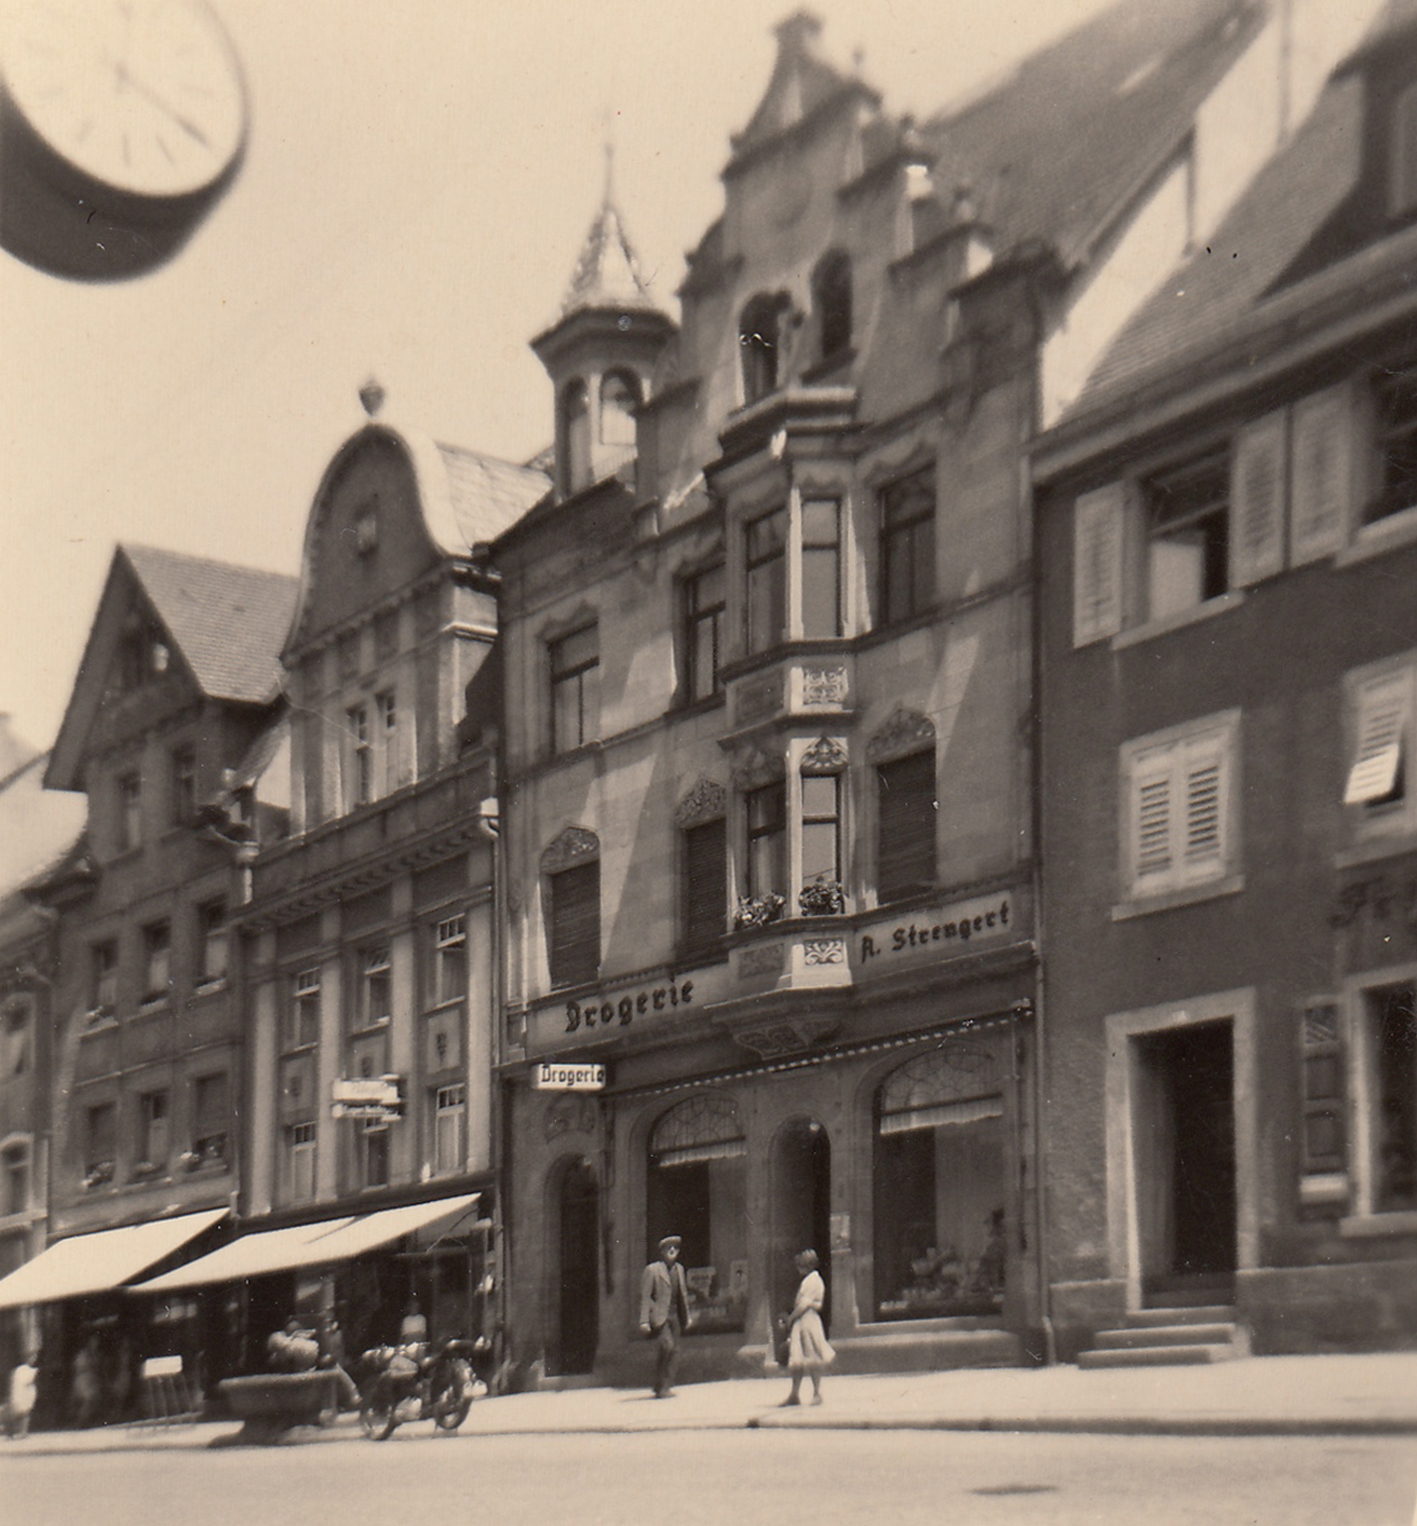 The residential house of the Gideon family in Villingen, on the first floor the pharmacy of the Strengert family.